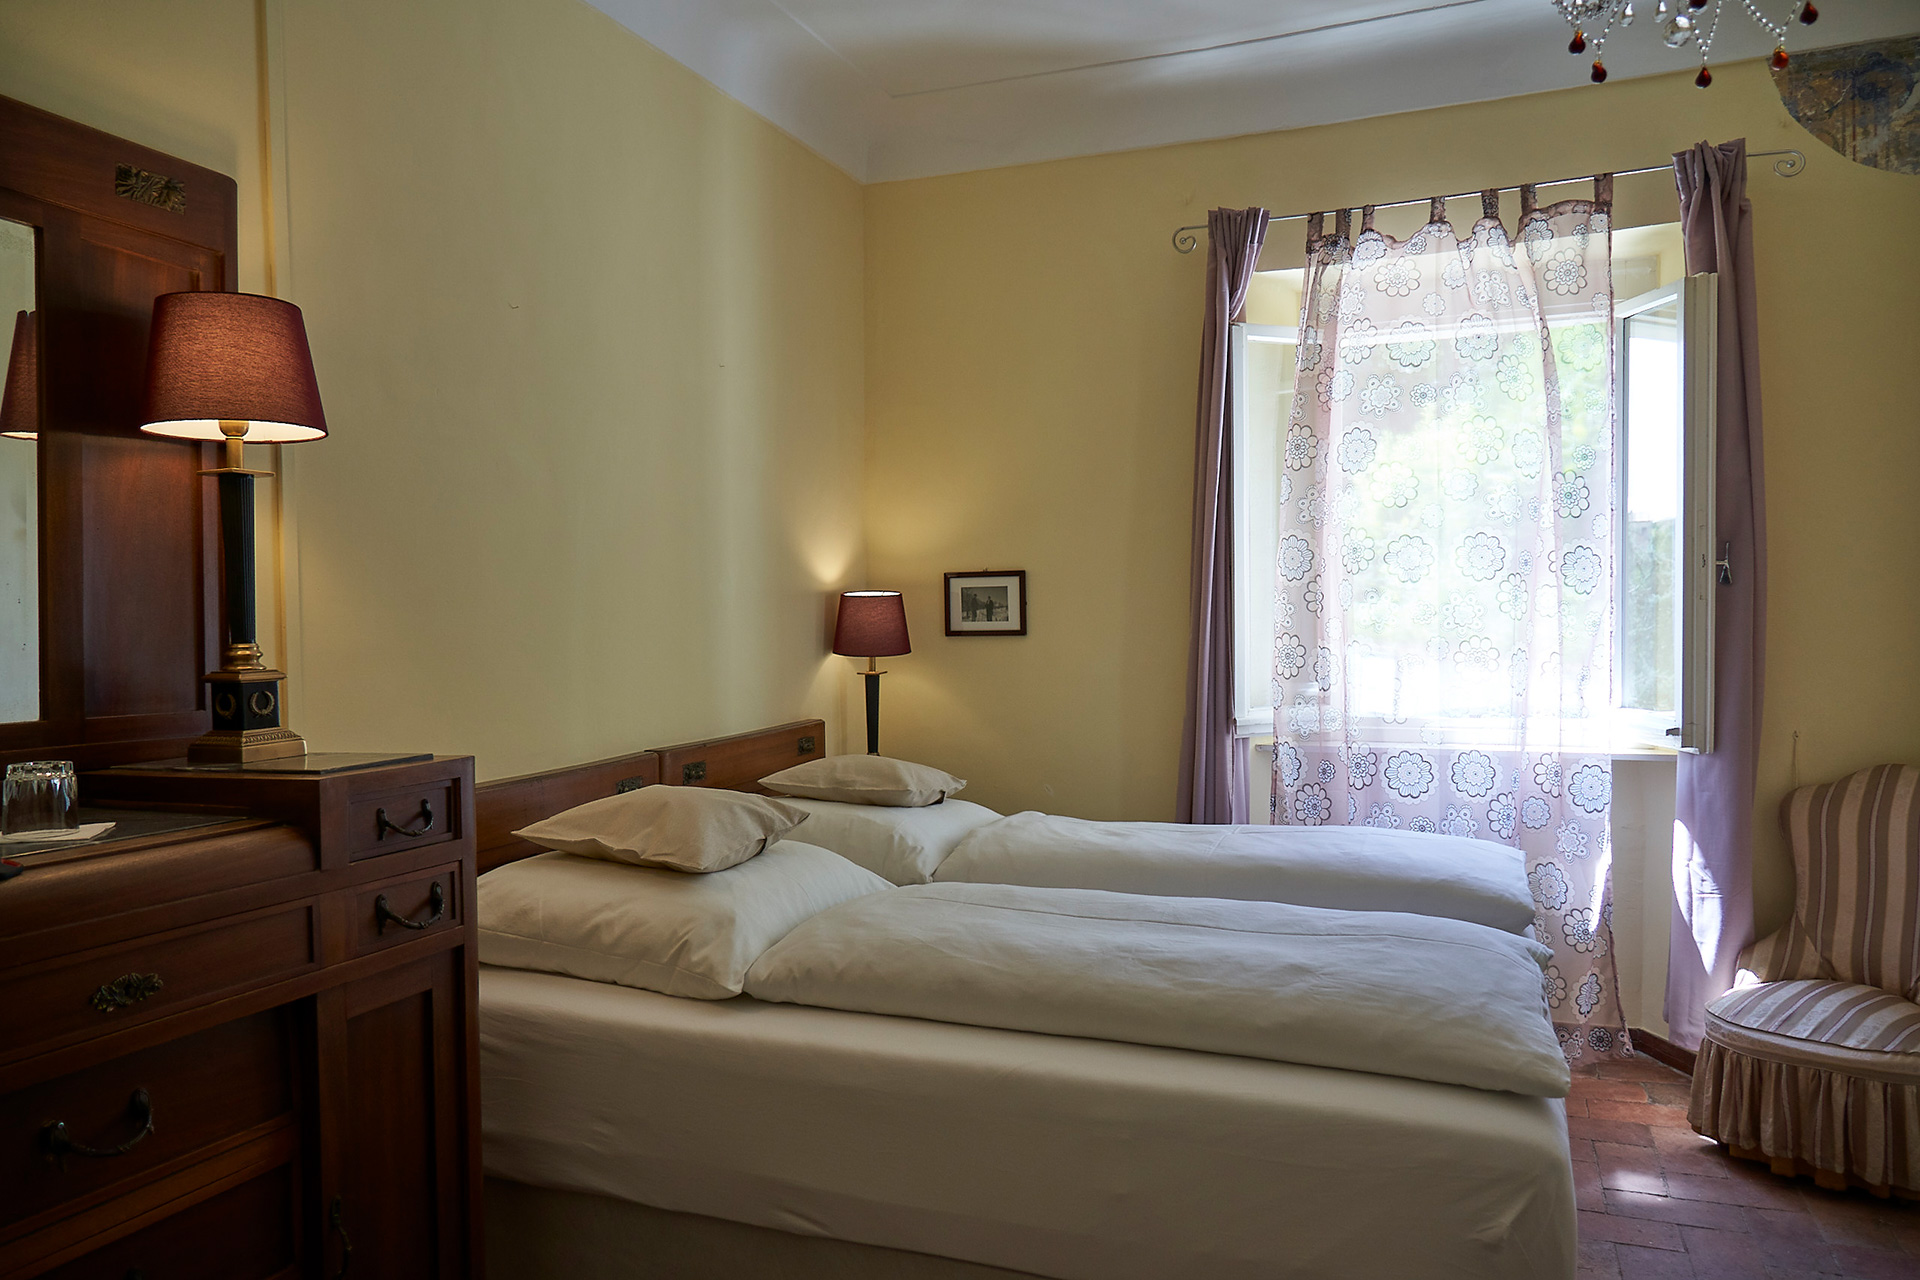 Villa Cartoceto – Rooms & Rates, Room Terra